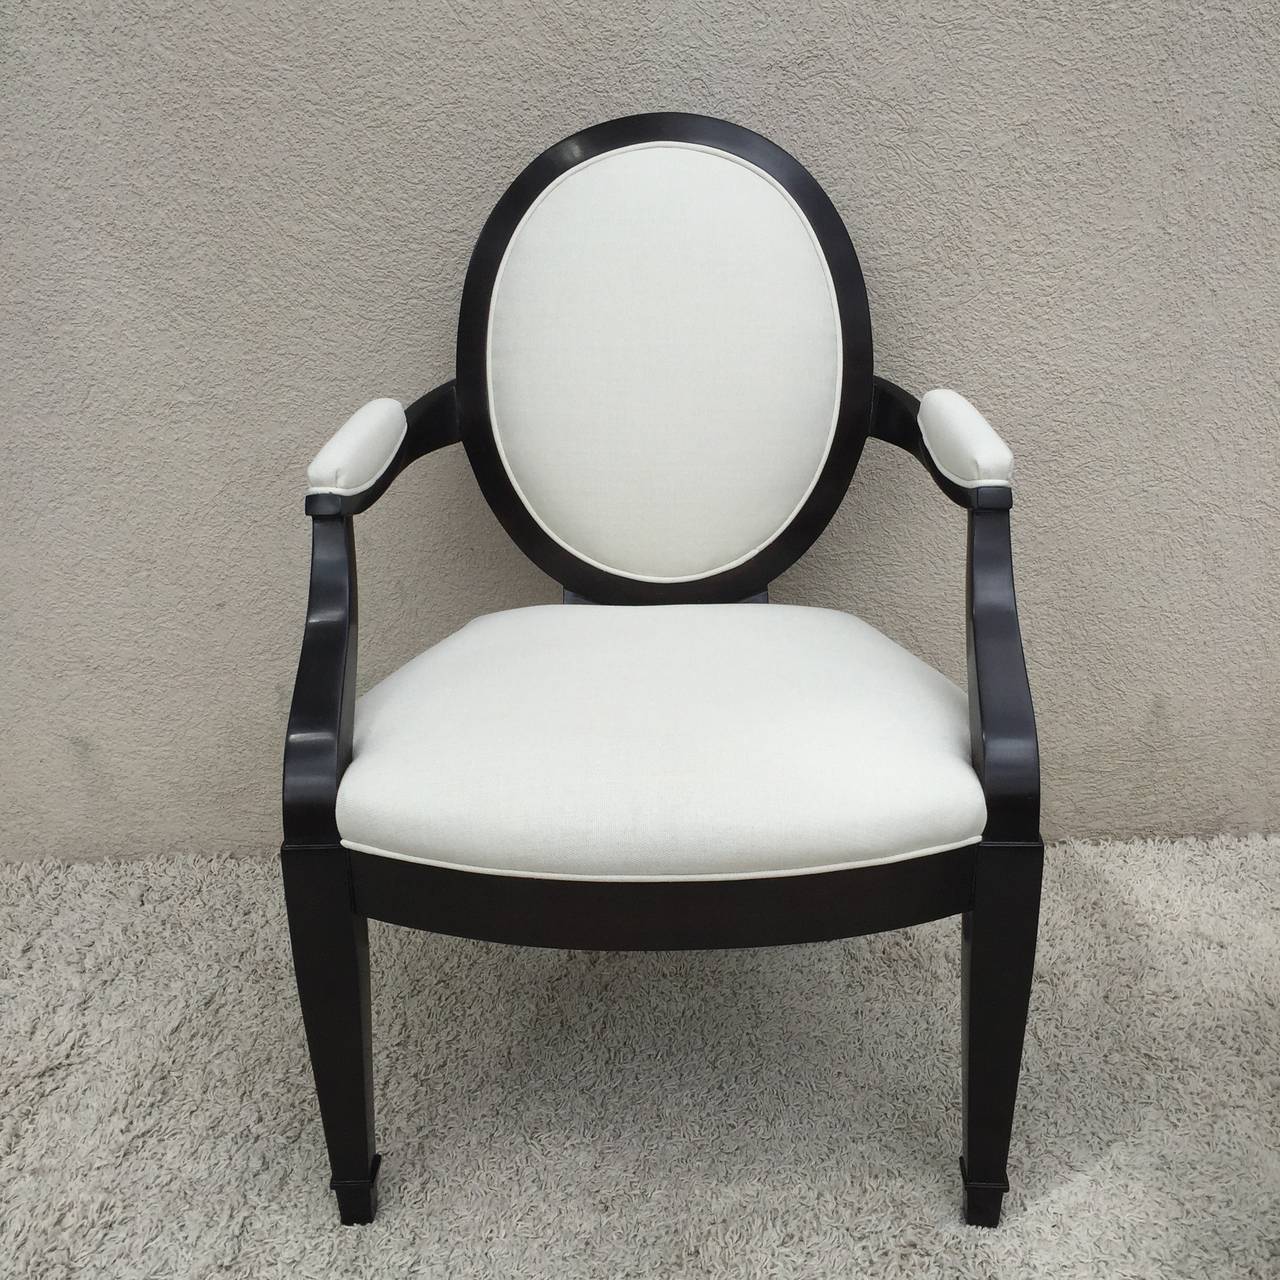 donghia chair